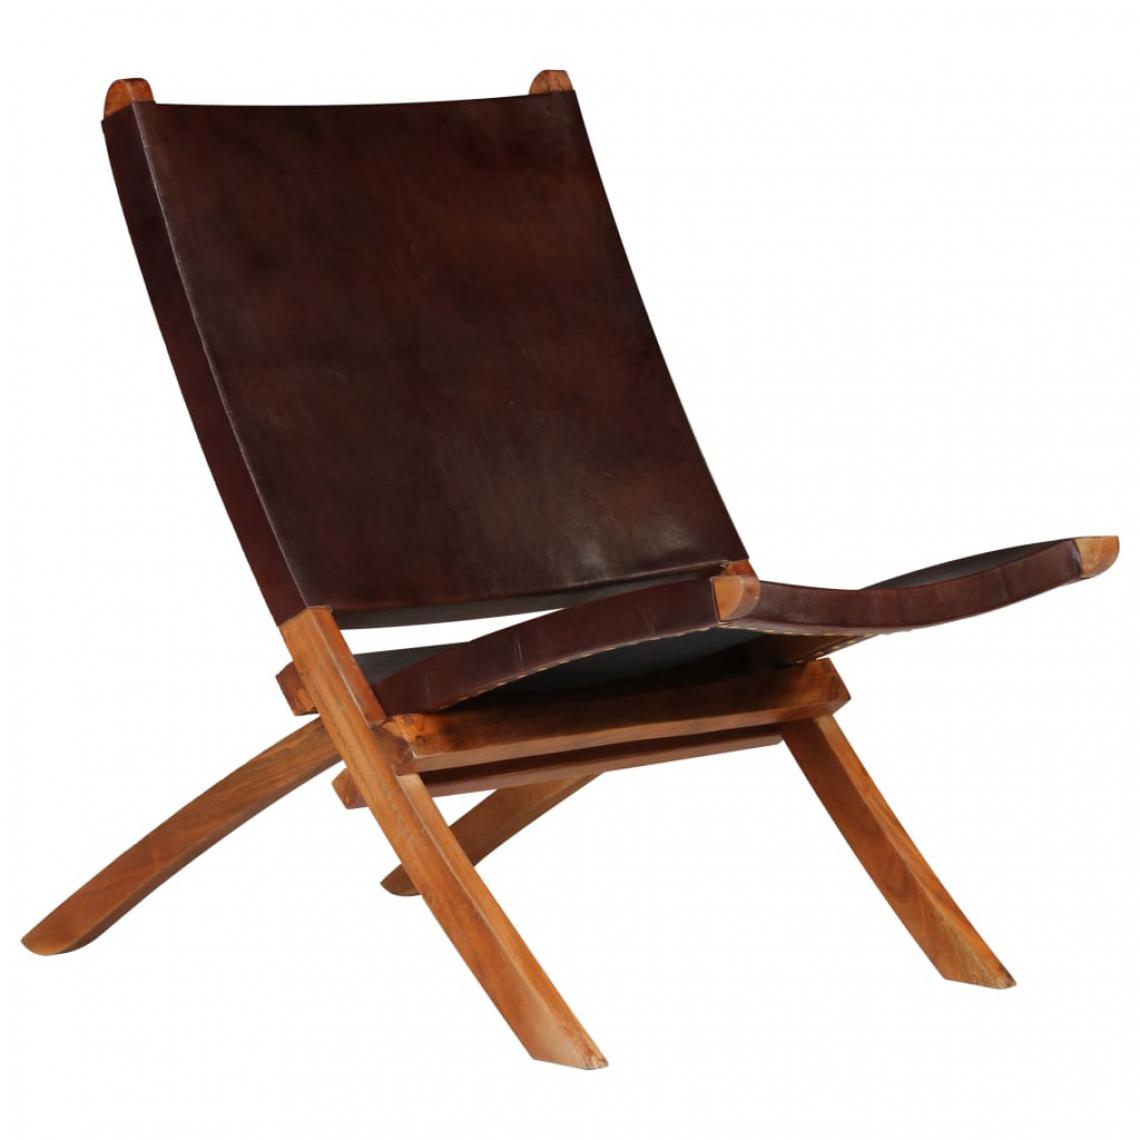 Icaverne - Moderne Fauteuils edition Paris Chaise de relaxation Cuir véritable 59 x 72 x 79 cm Marron - Chaises